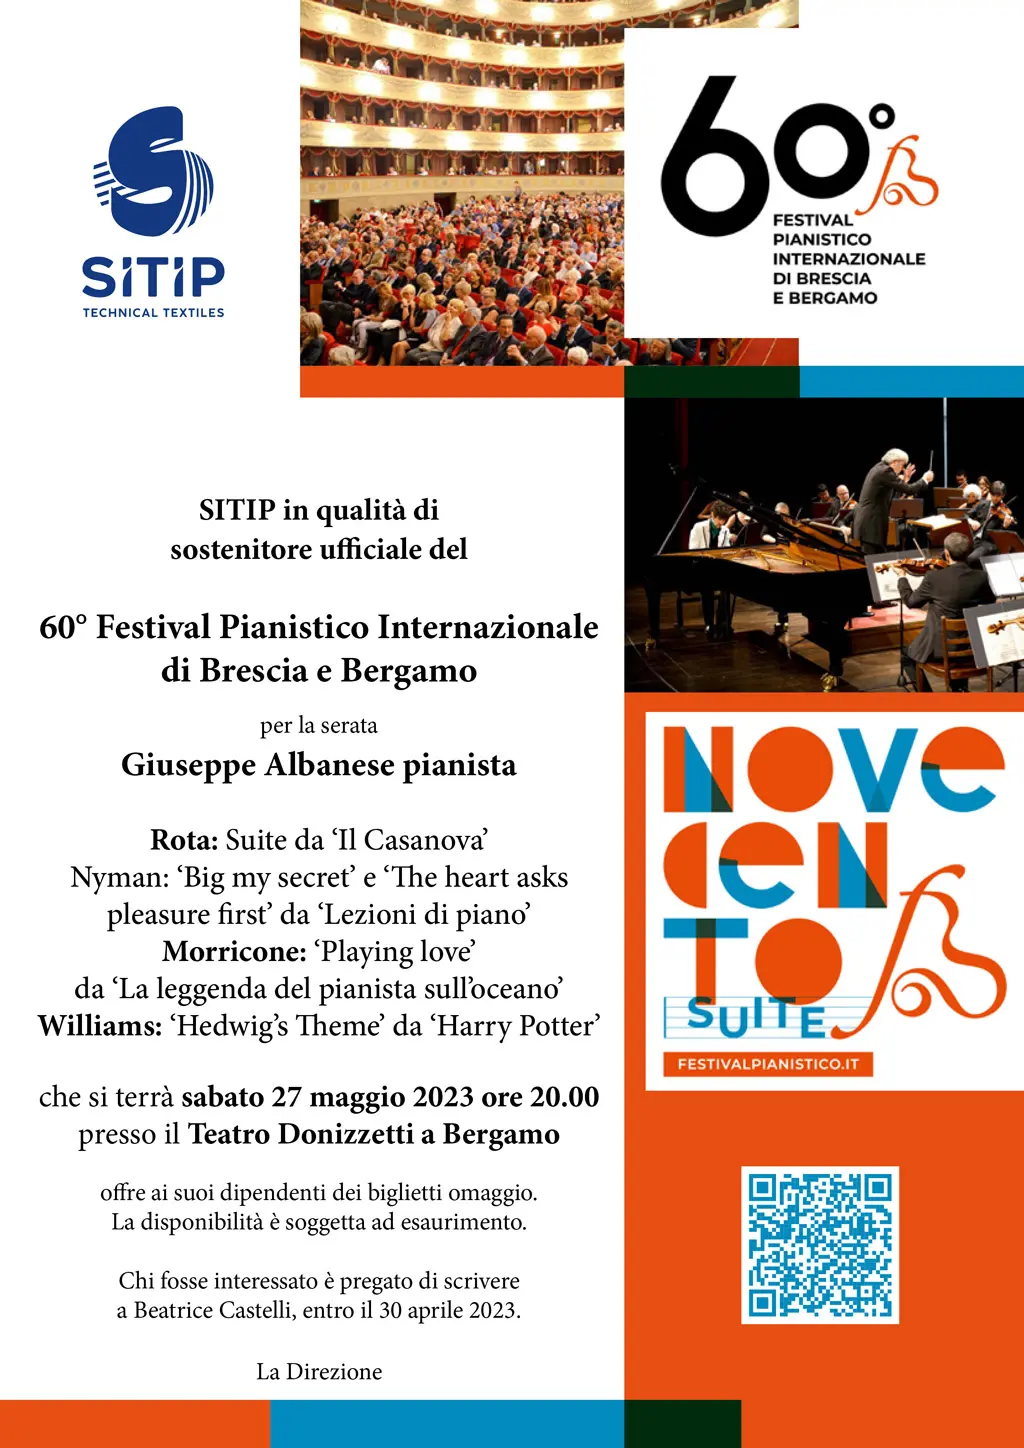 60-festival-pianistico-internazionale-brescia-bergamo